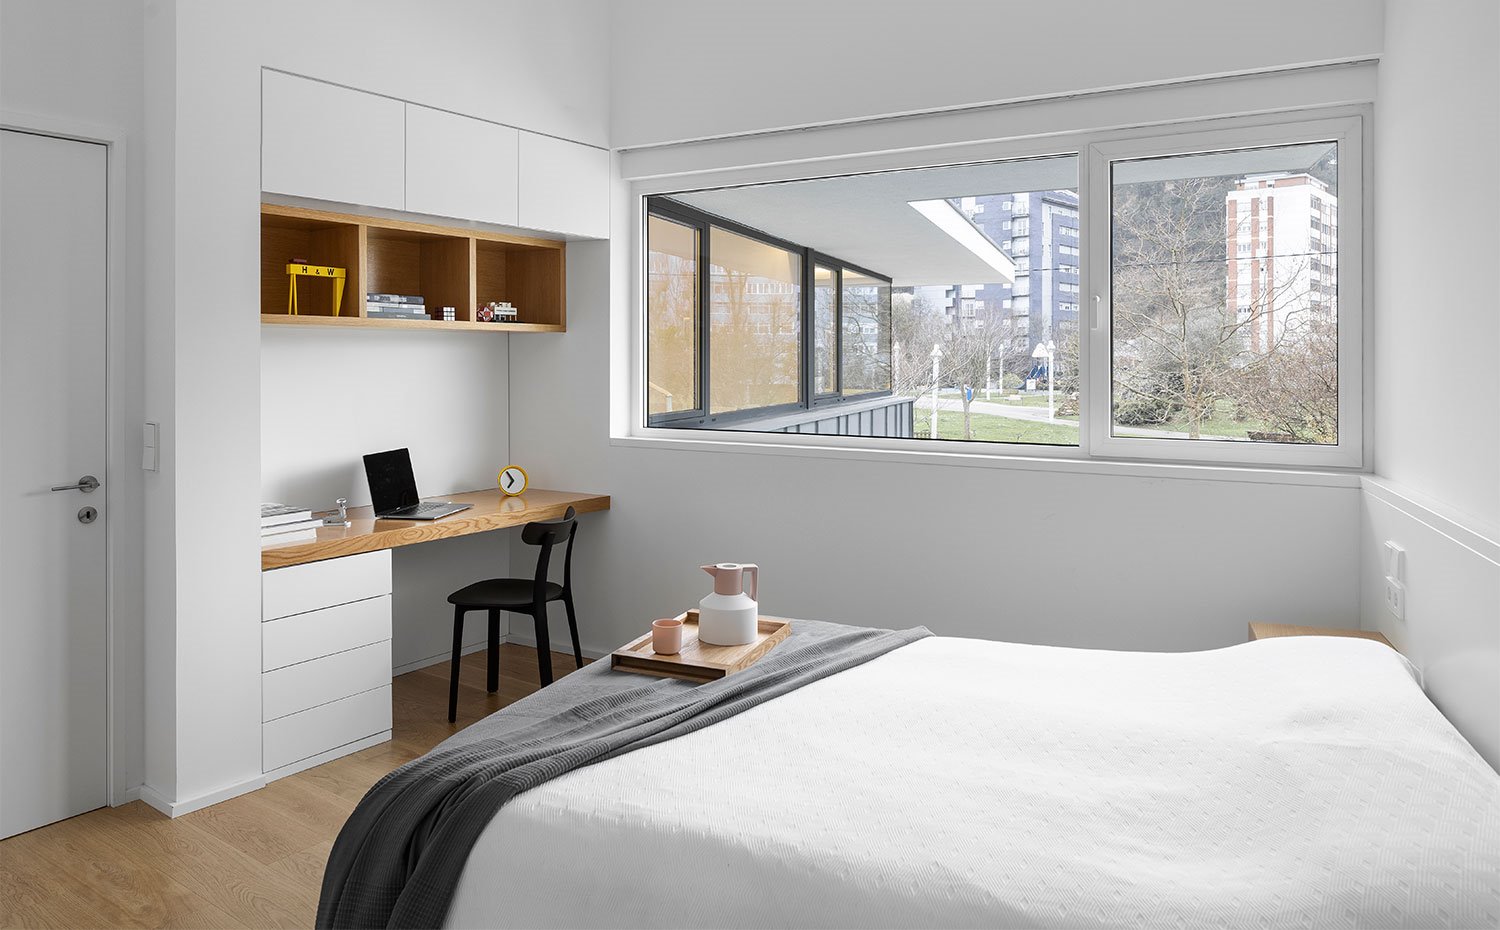 Dormitorio con amplia apertura horizontal hacia el exterior, mobiliario integrado en blanco con acabados en madera natural